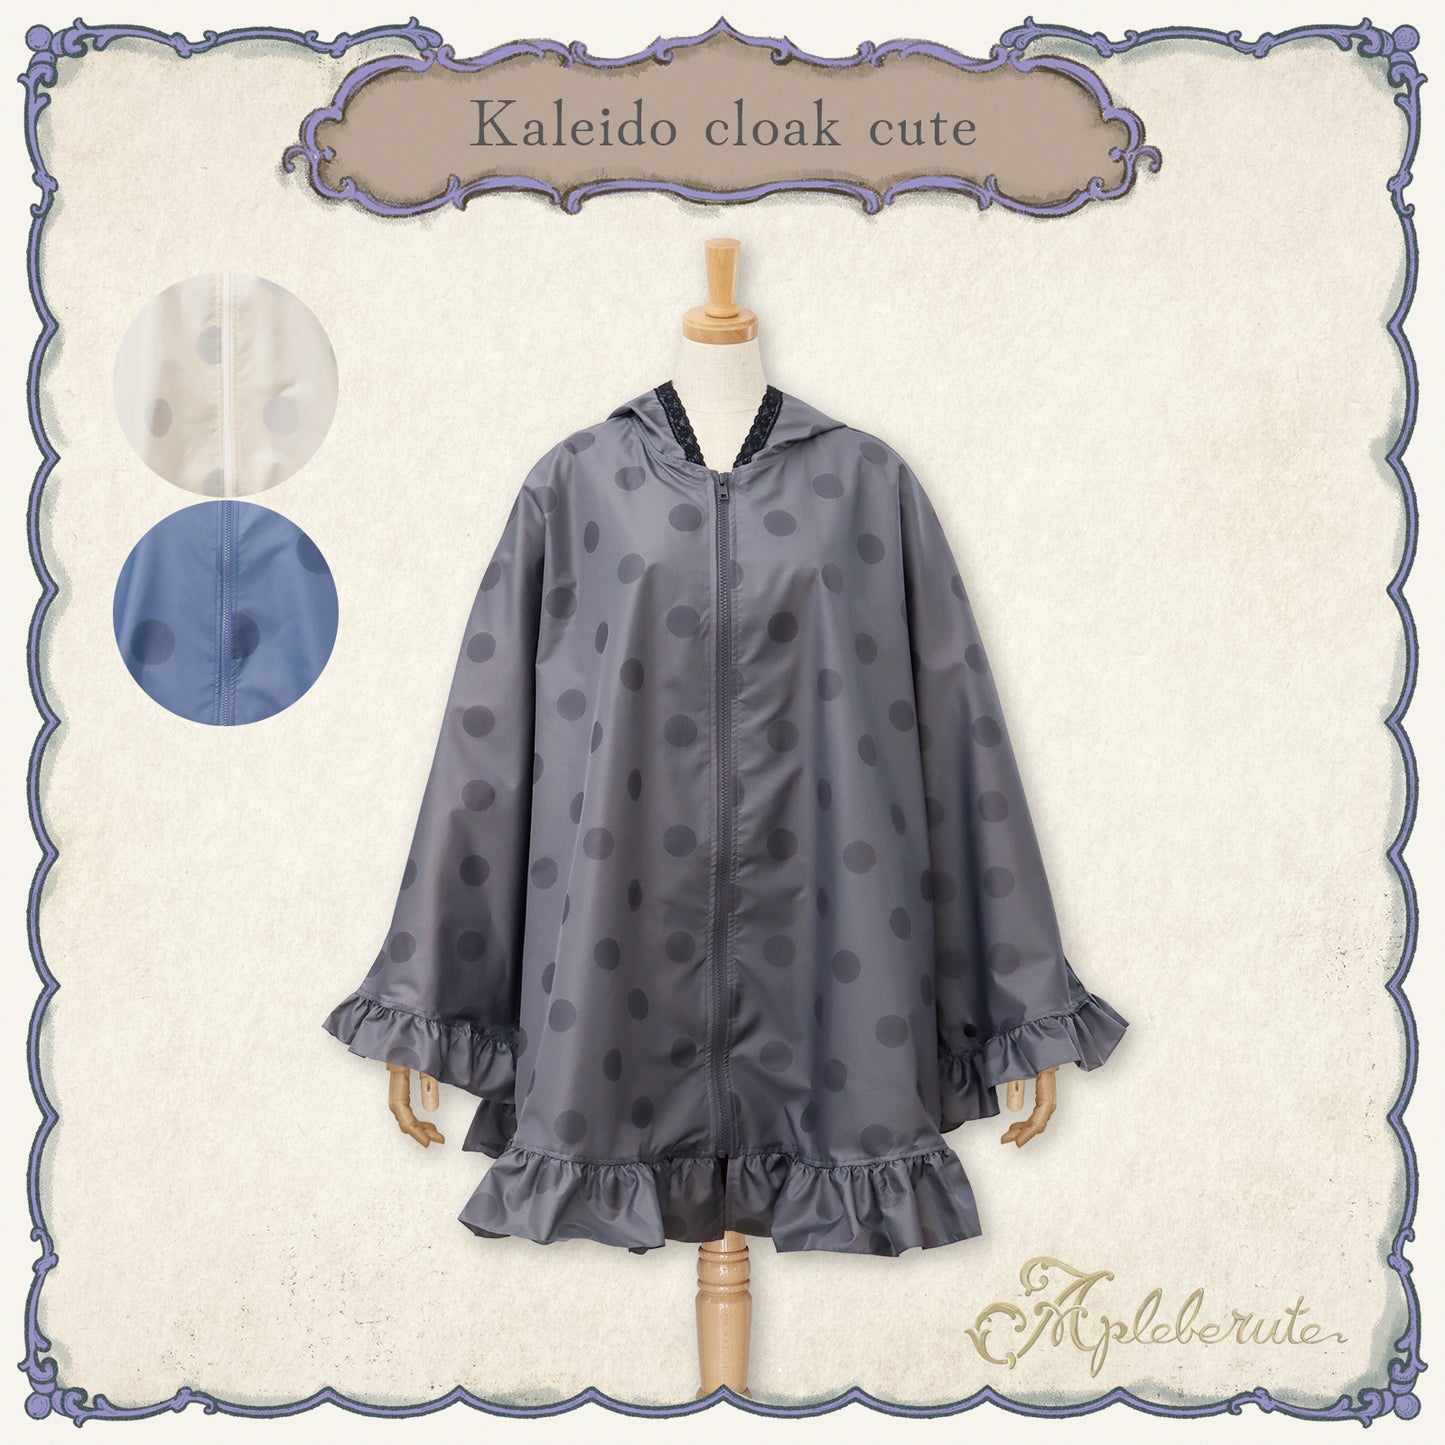 kaleido-cloak-cute (カレイド クローク キュート) - ポンチョ レインポンチョ フリル 超撥水 収納ポーチ付き